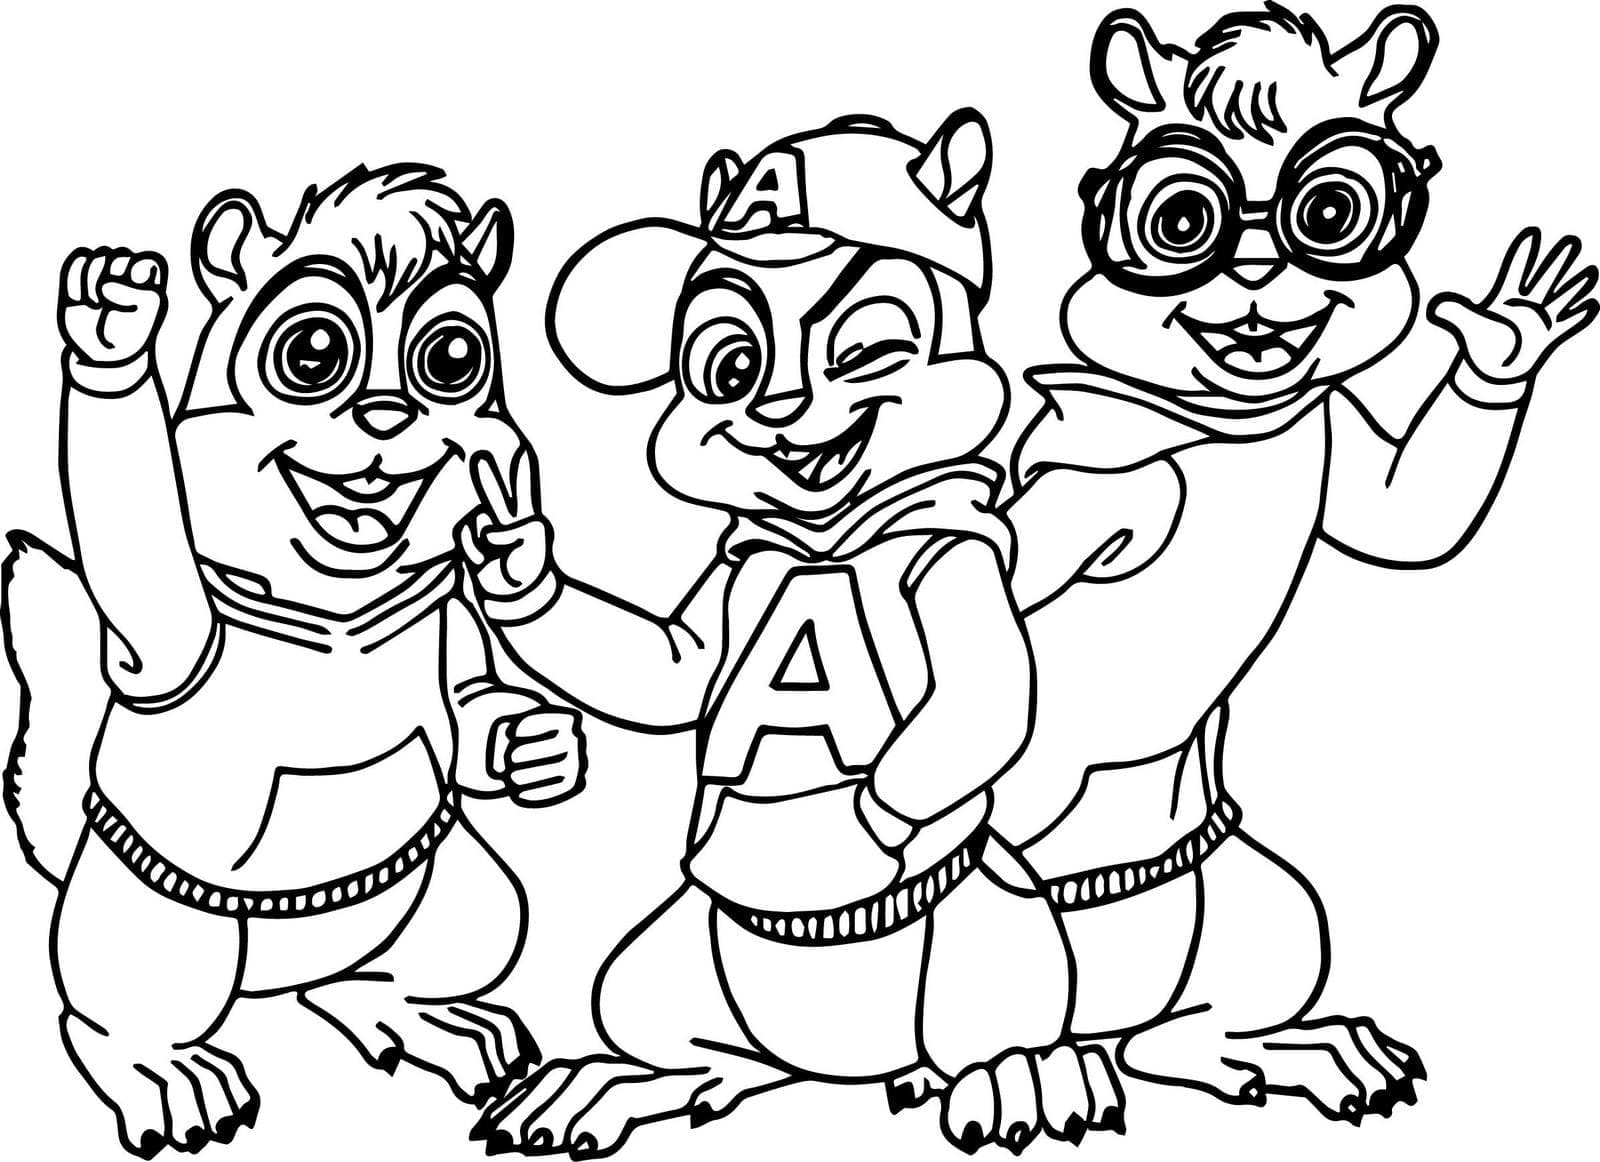 Personnages dans Alvin et les Chipmunks coloring page